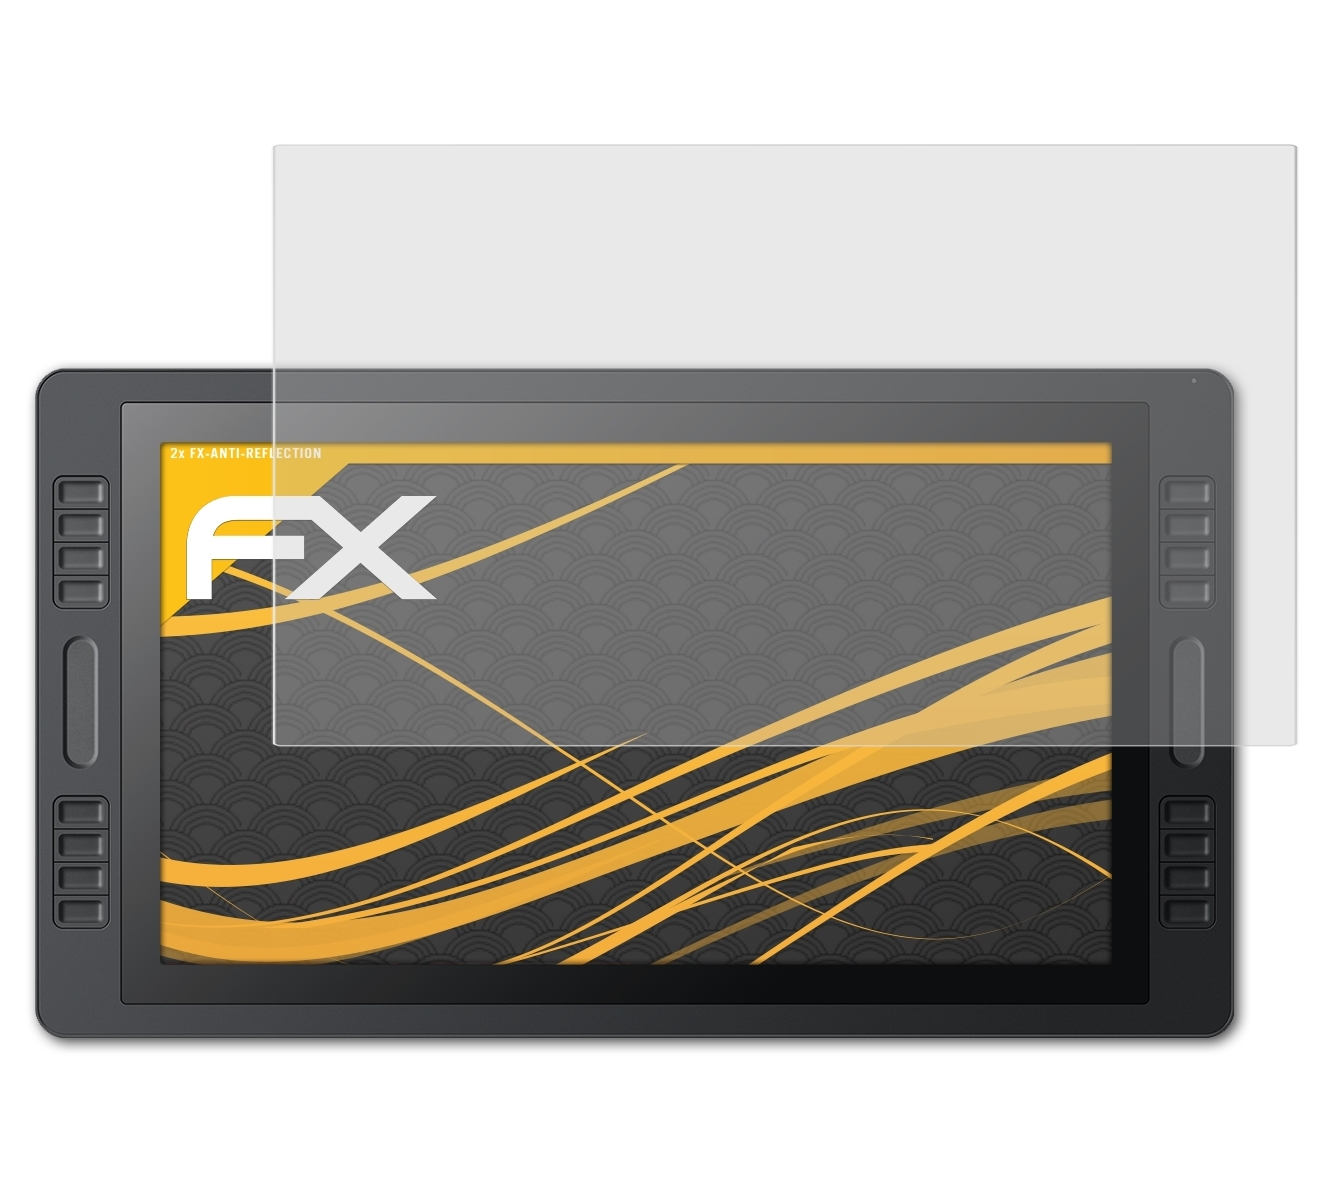 ATFOLIX 2x FX-Antireflex Pro Huion Displayschutz(für Kamvas 20)